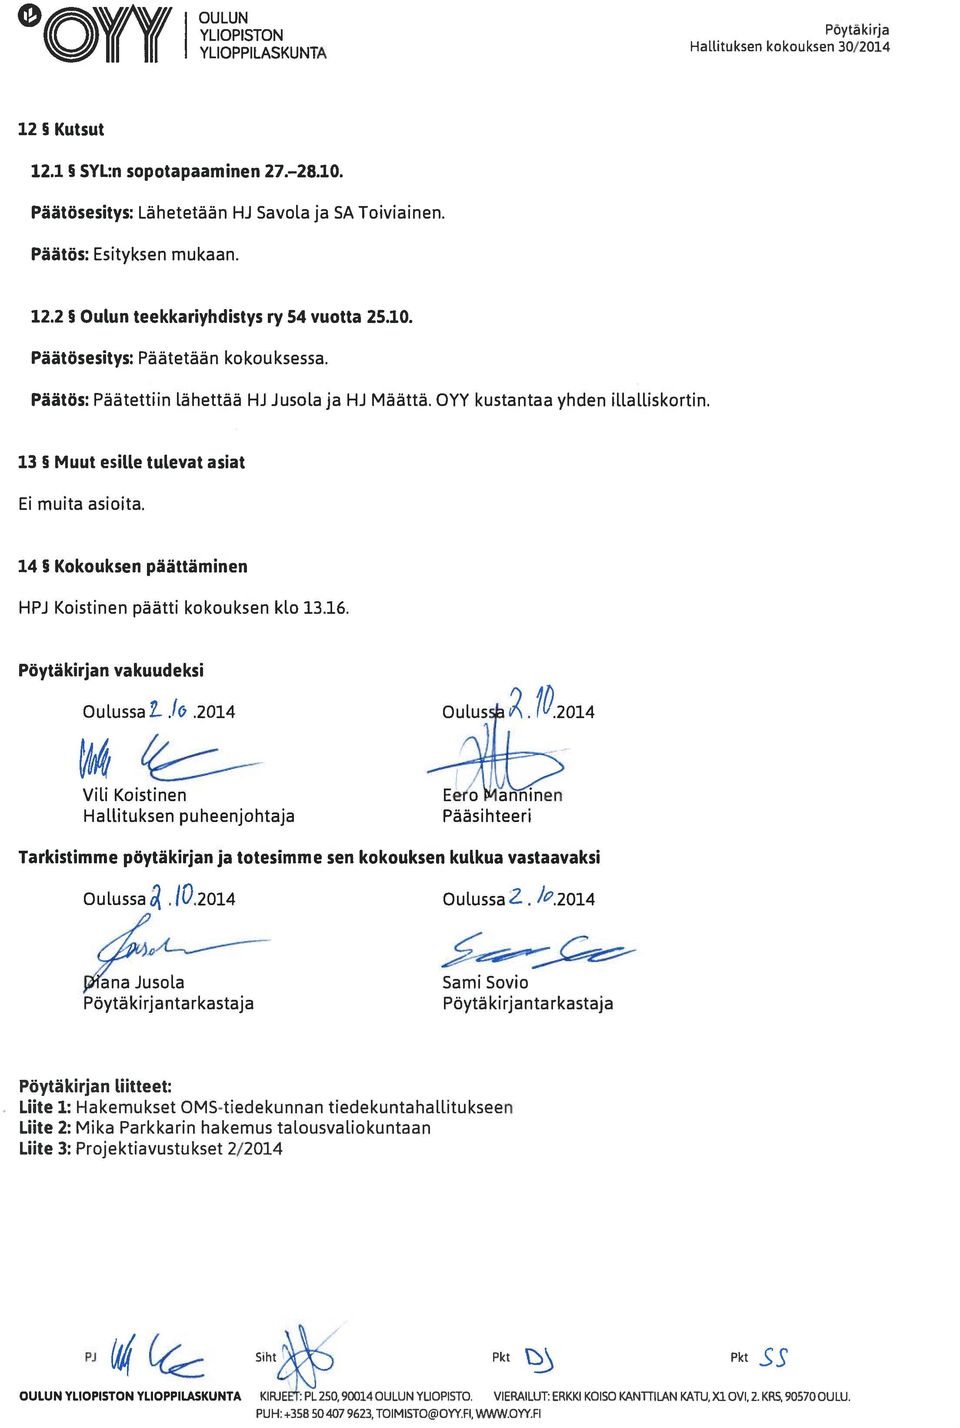 14 Kokouksen päättäminen HPJ Koistinen päätti kokouksen klo 13.16. Pöytäkirjan vakuudeksi Oulussa L.t.2014. 10.